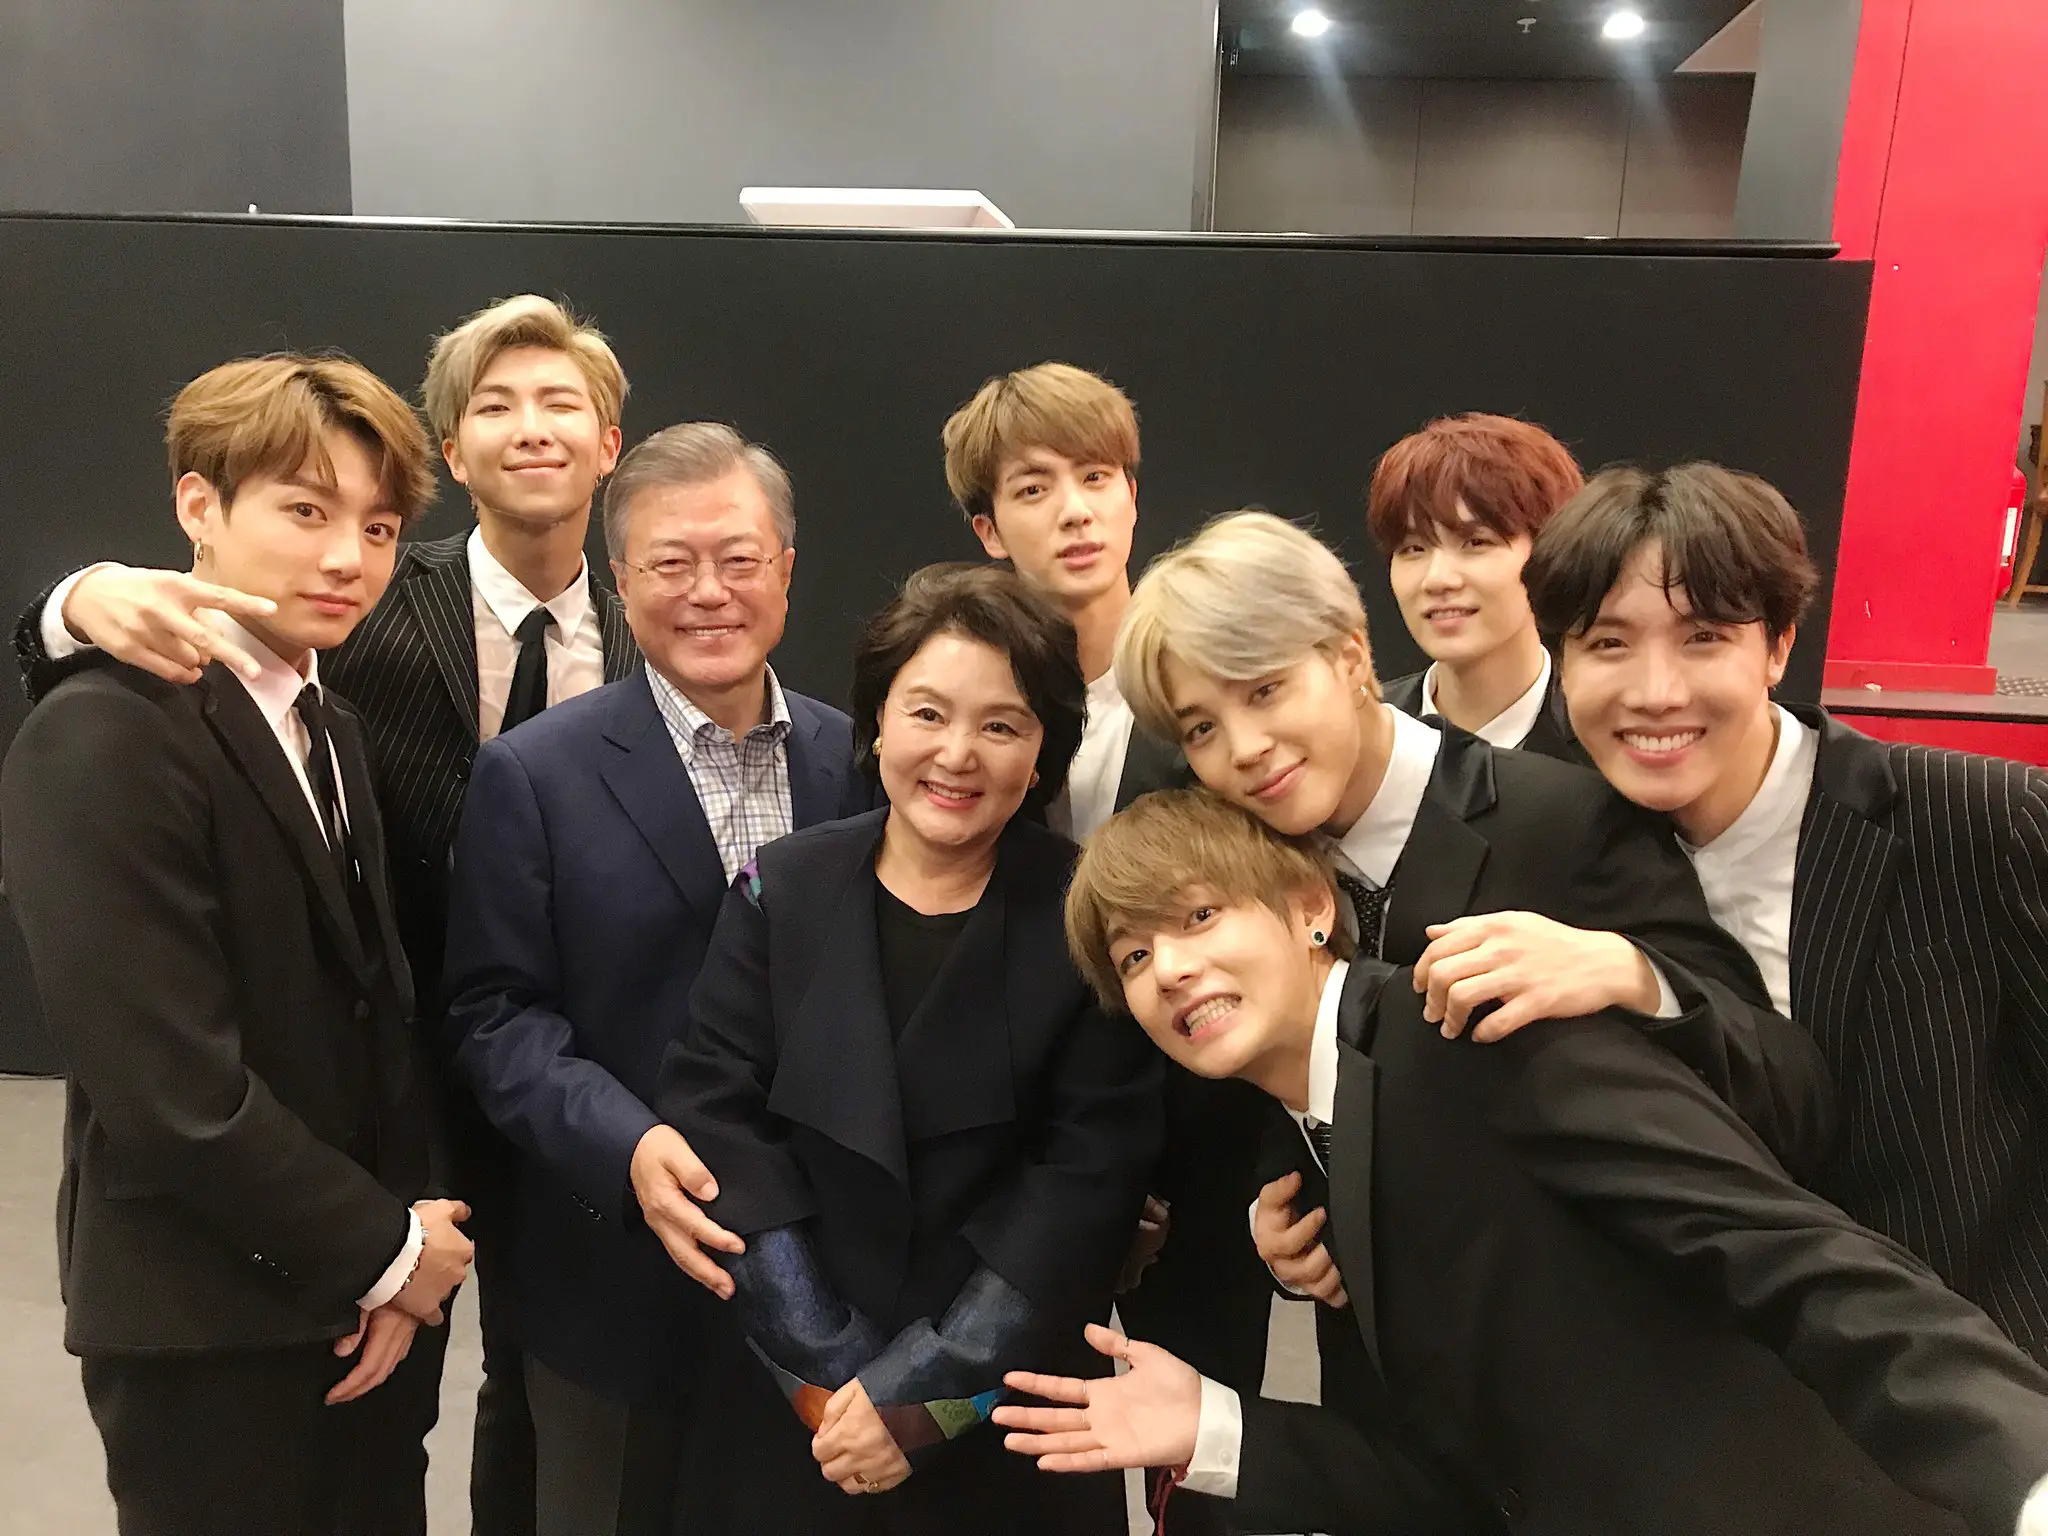 Les BTS posent avec le président Moon Jae In après le concert en France